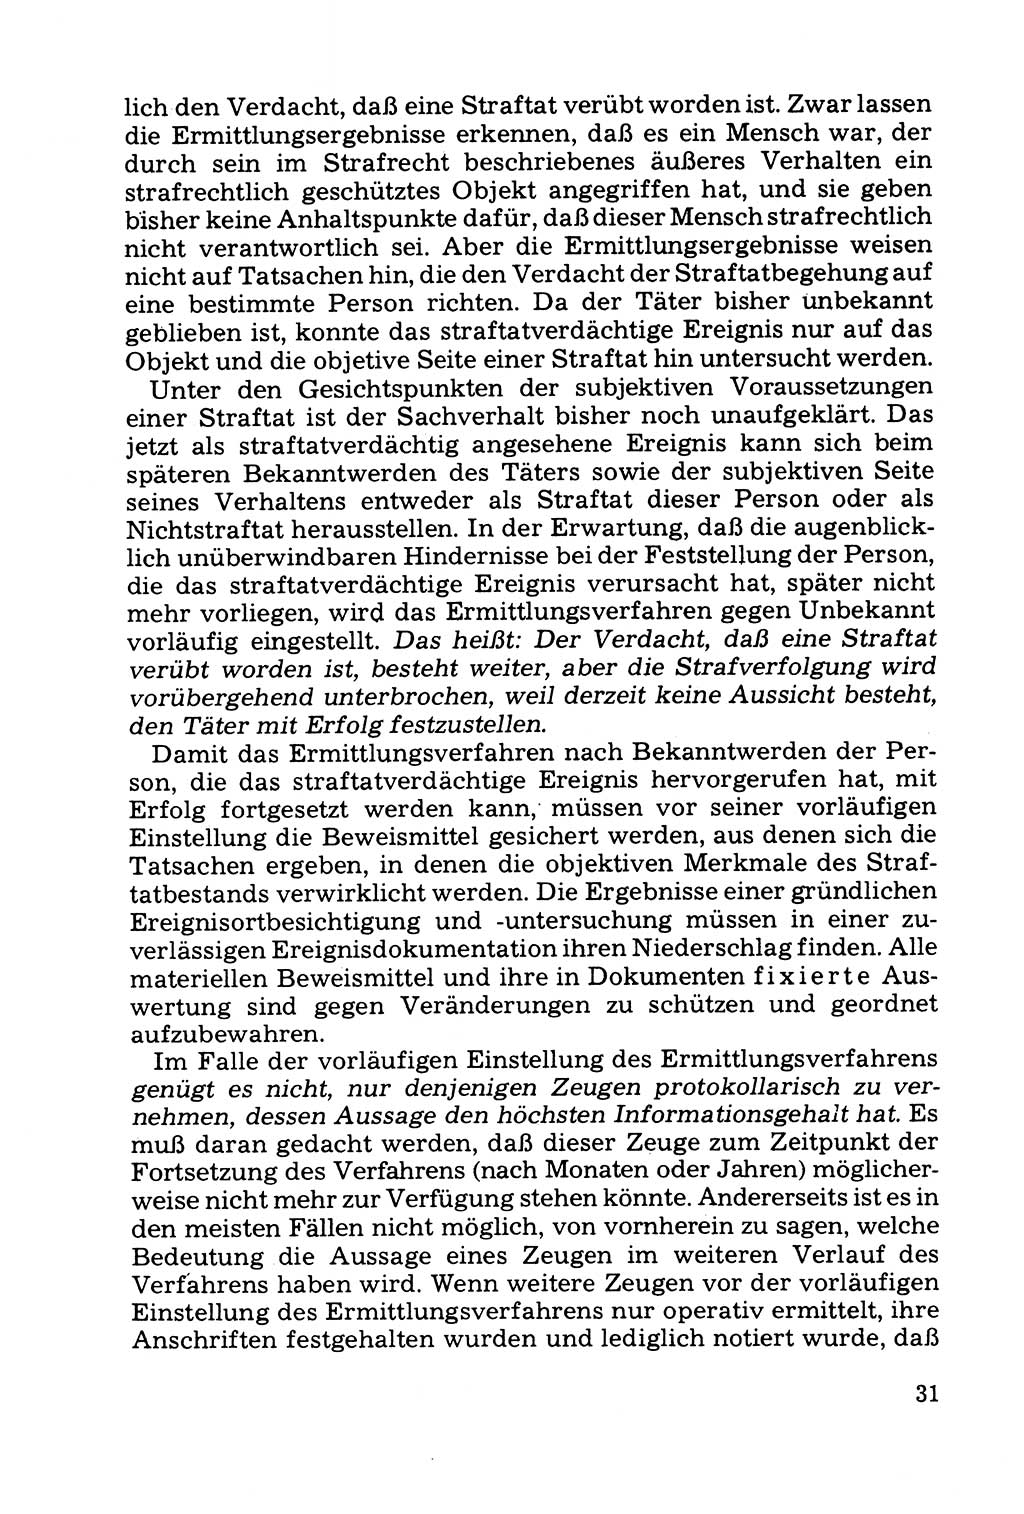 Grundfragen der Beweisführung im Ermittlungsverfahren [Deutsche Demokratische Republik (DDR)] 1980, Seite 31 (Bws.-Fhrg. EV DDR 1980, S. 31)